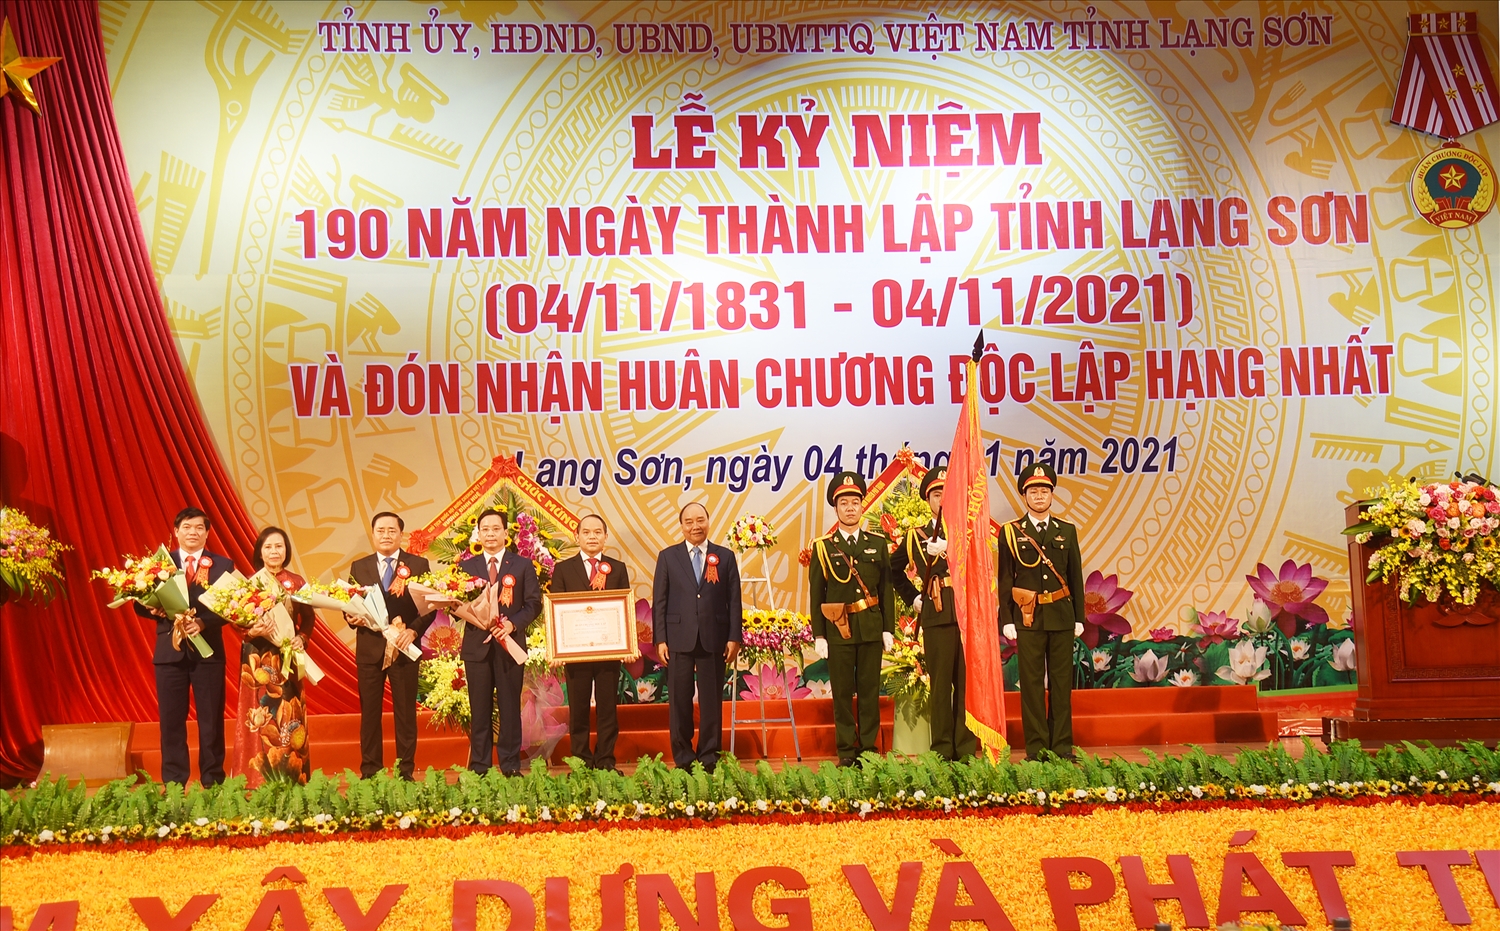 Chủ tịch nước Nguyễn Xuân Phúc trao tặng Huân chương Độc lập hạng Nhất cho Đảng bộ, chính quyền và nhân dân các dân tộc tỉnh Lạng Sơn 